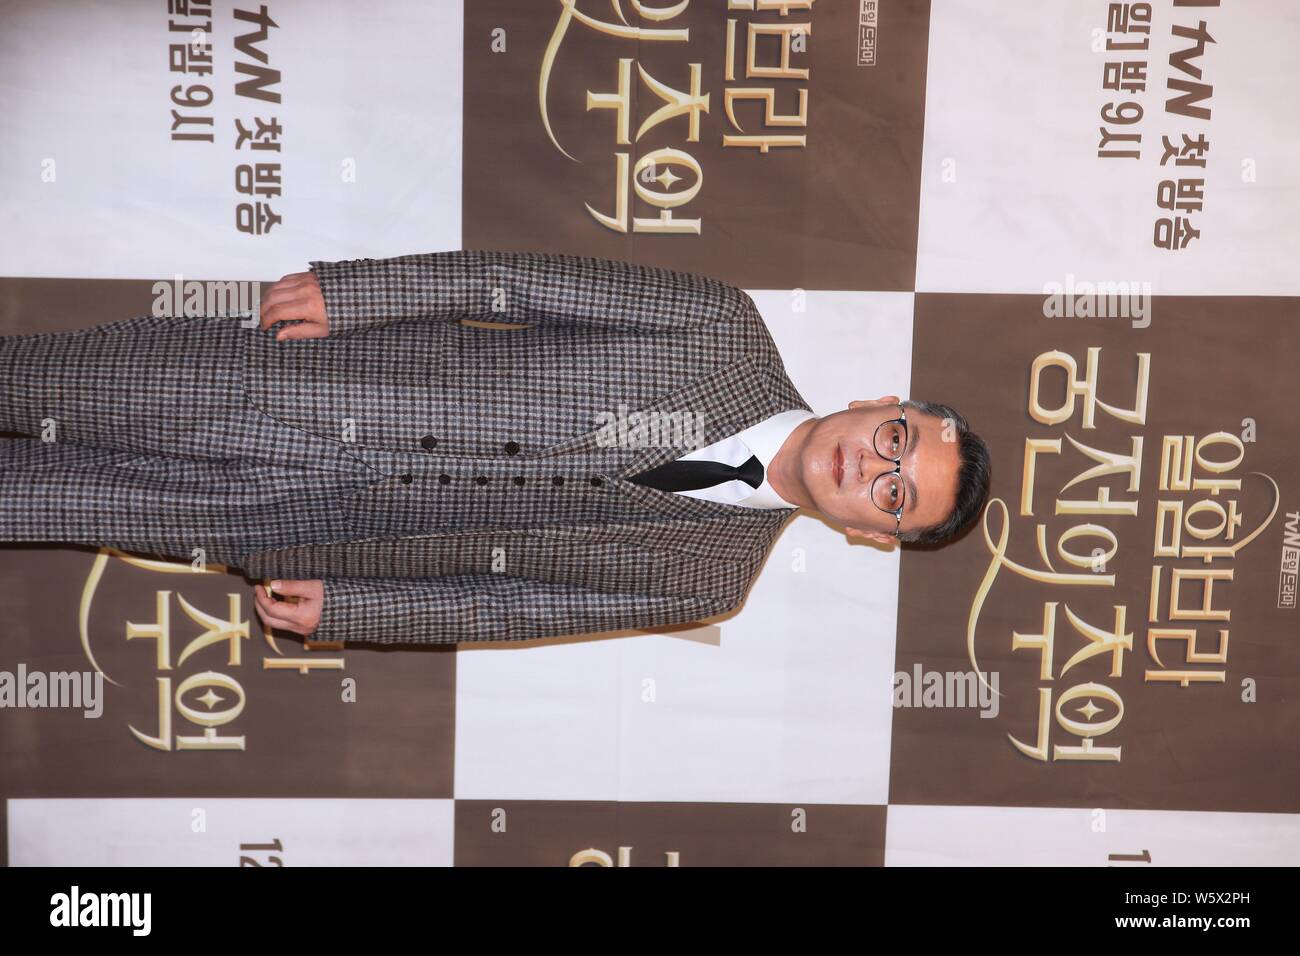 Sud coreano Kim attore Eui-sung assiste la conferenza stampa per la nuova serie televisiva 'Memories dell'Alhambra' a Seul, Corea del Sud, 28 novembre 2018. Foto Stock